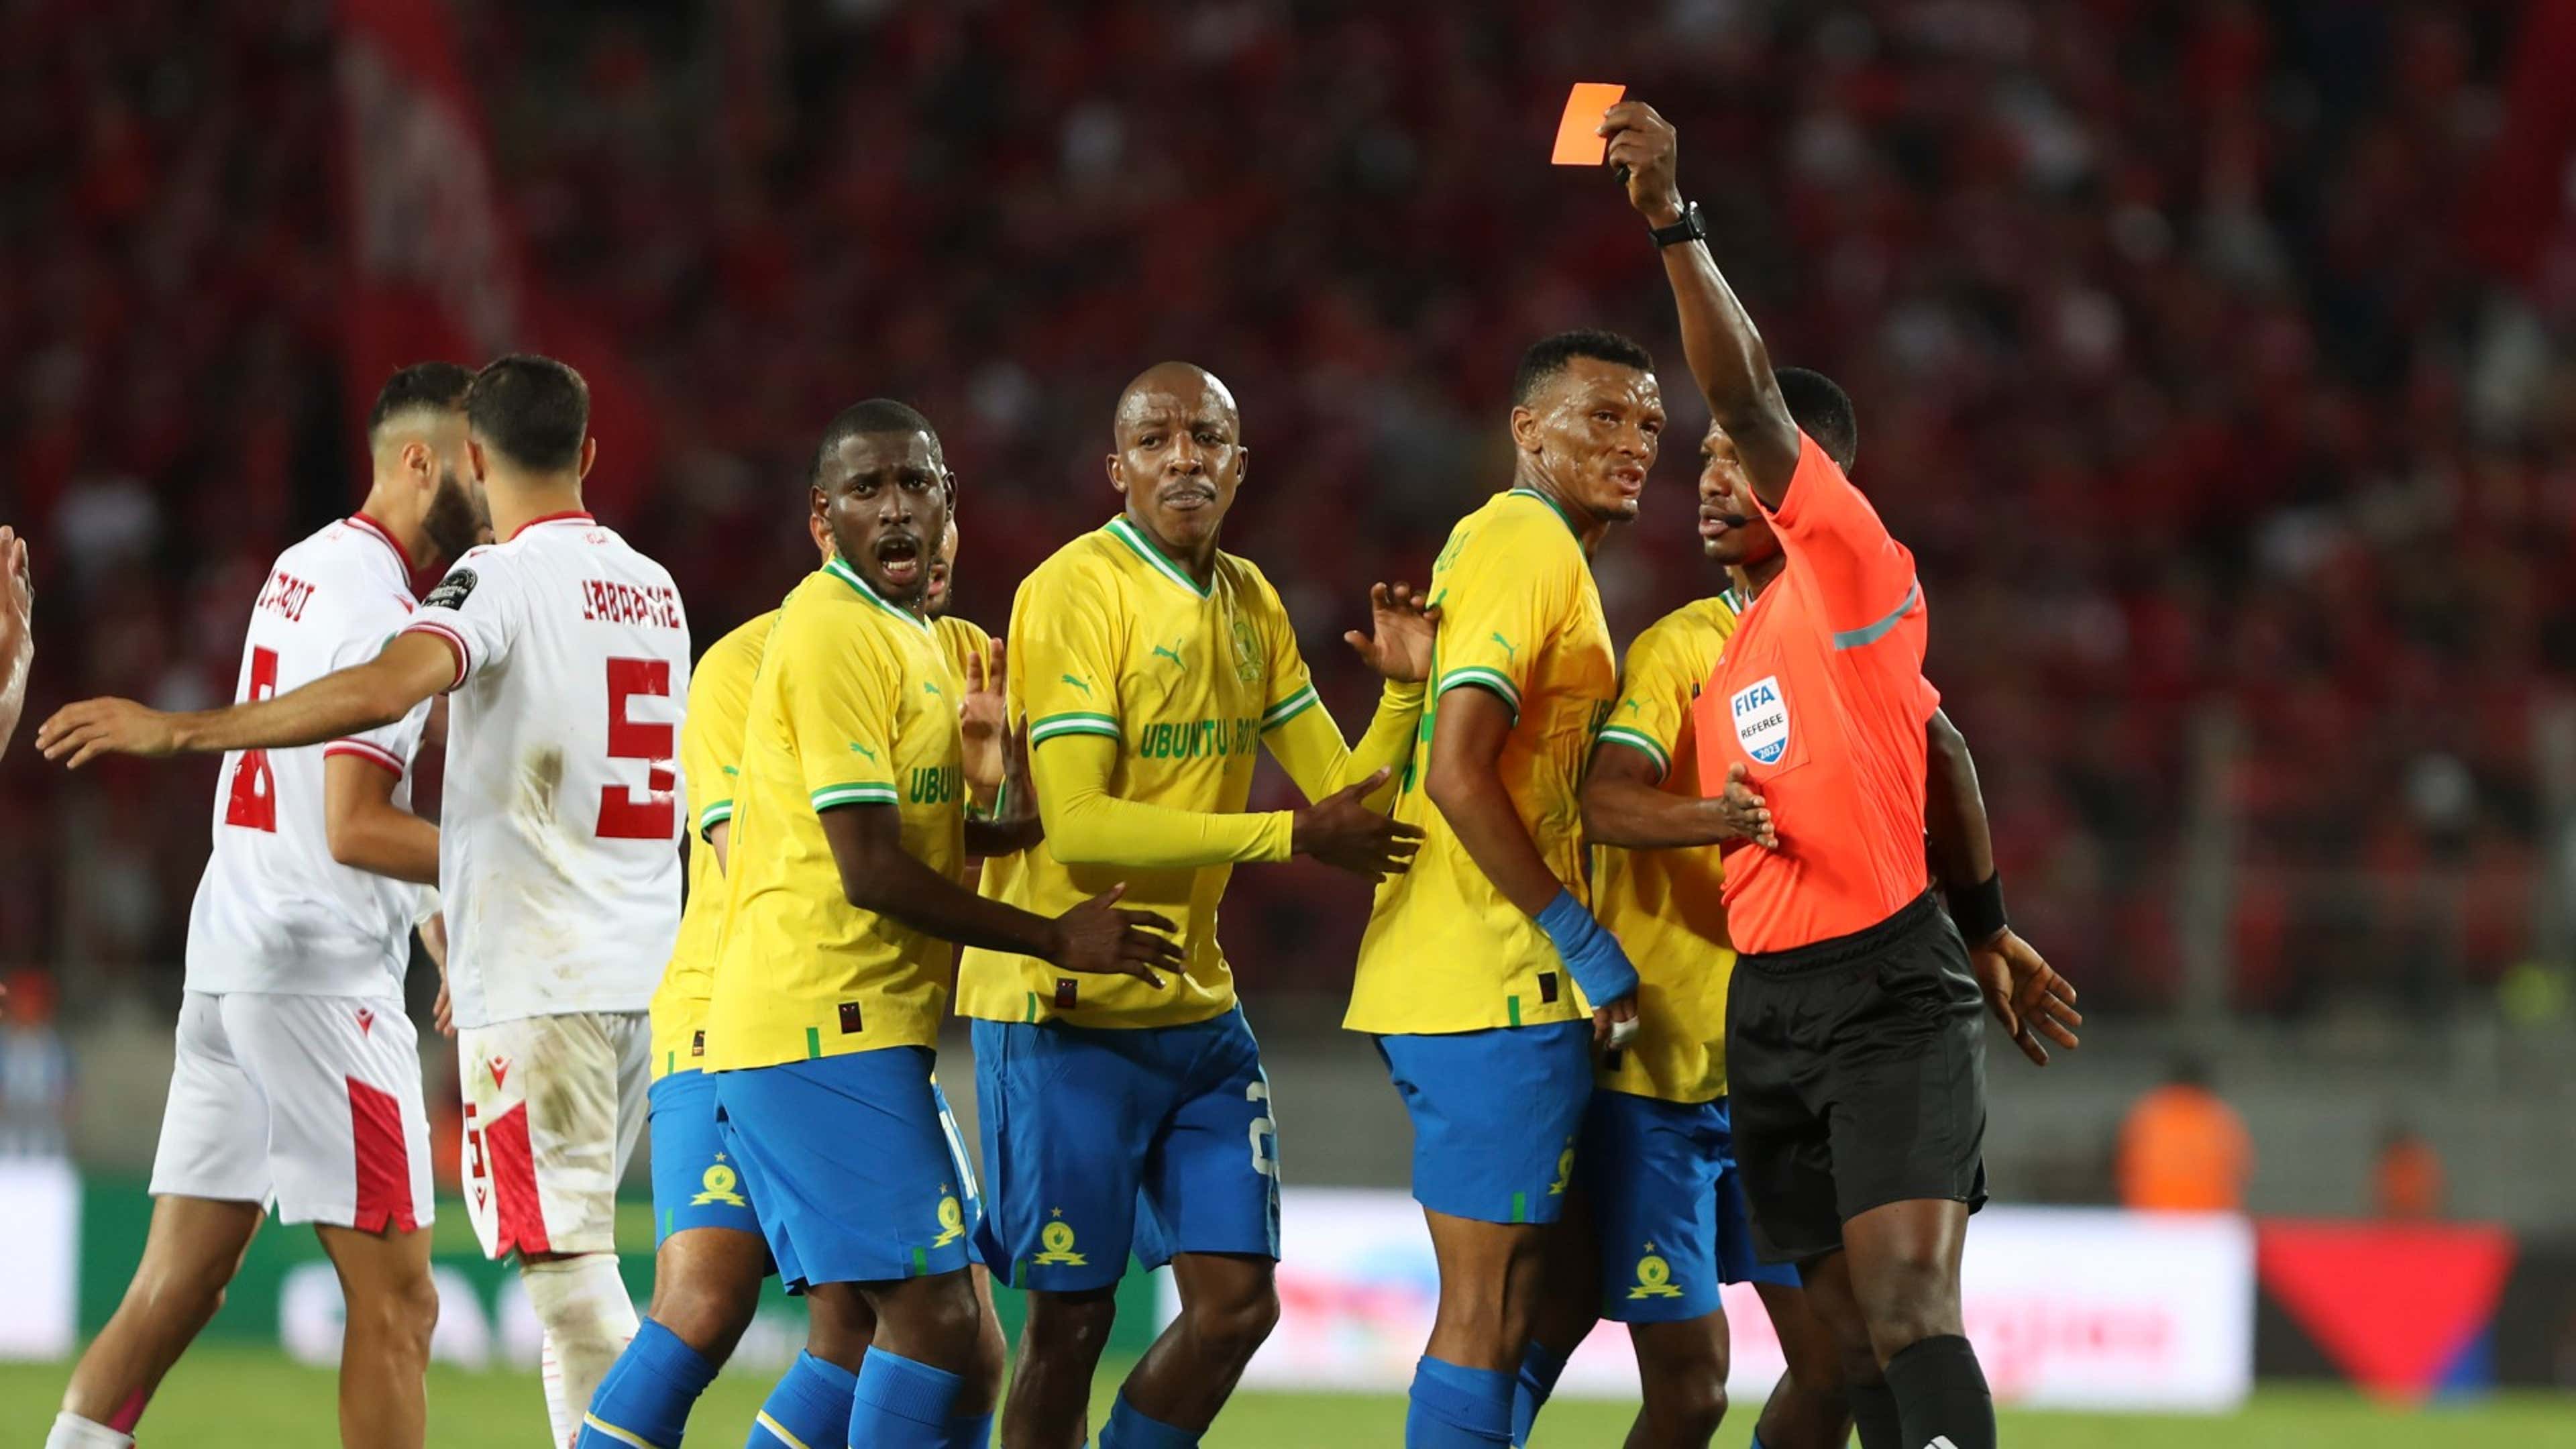 Nine-man Mamelodi Sundowns frustrate Wydad Casablanca in dramatic Caf Champions League clash | Goal.com South Africa